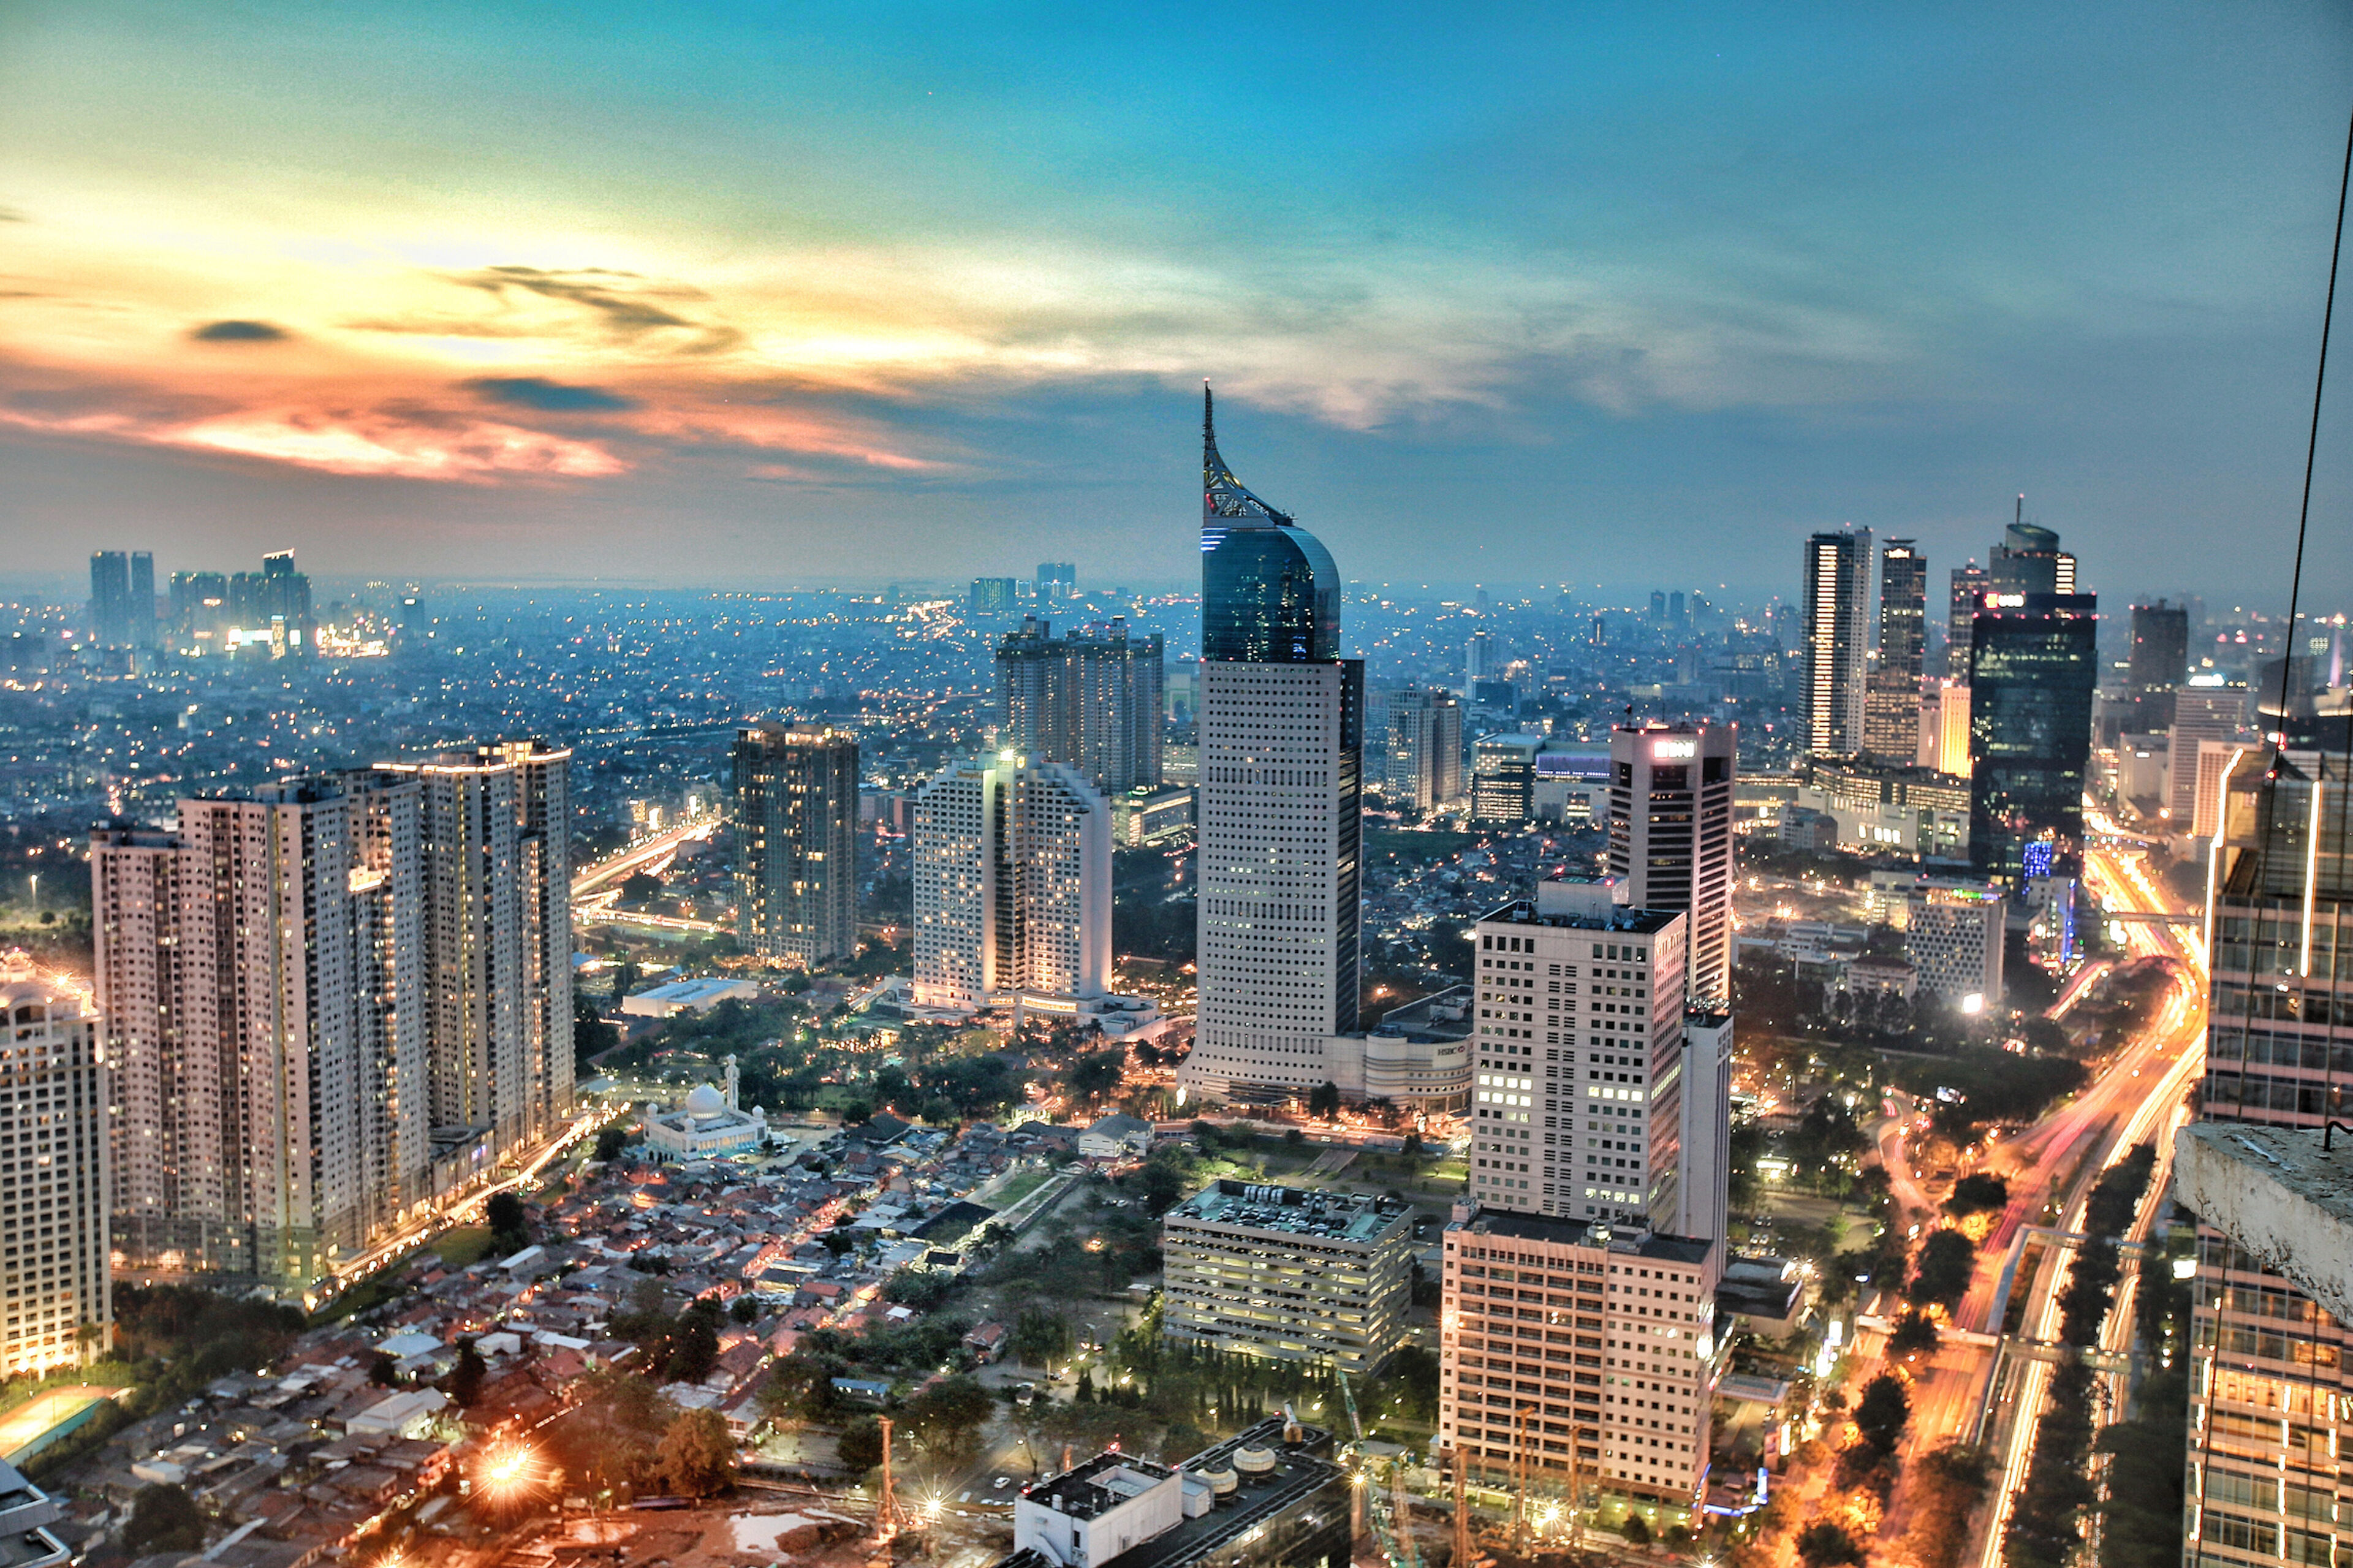 El horizonte de Yakarta al atardecer con rascacielos iluminados y el telón de fondo de un atardecer vibrante.